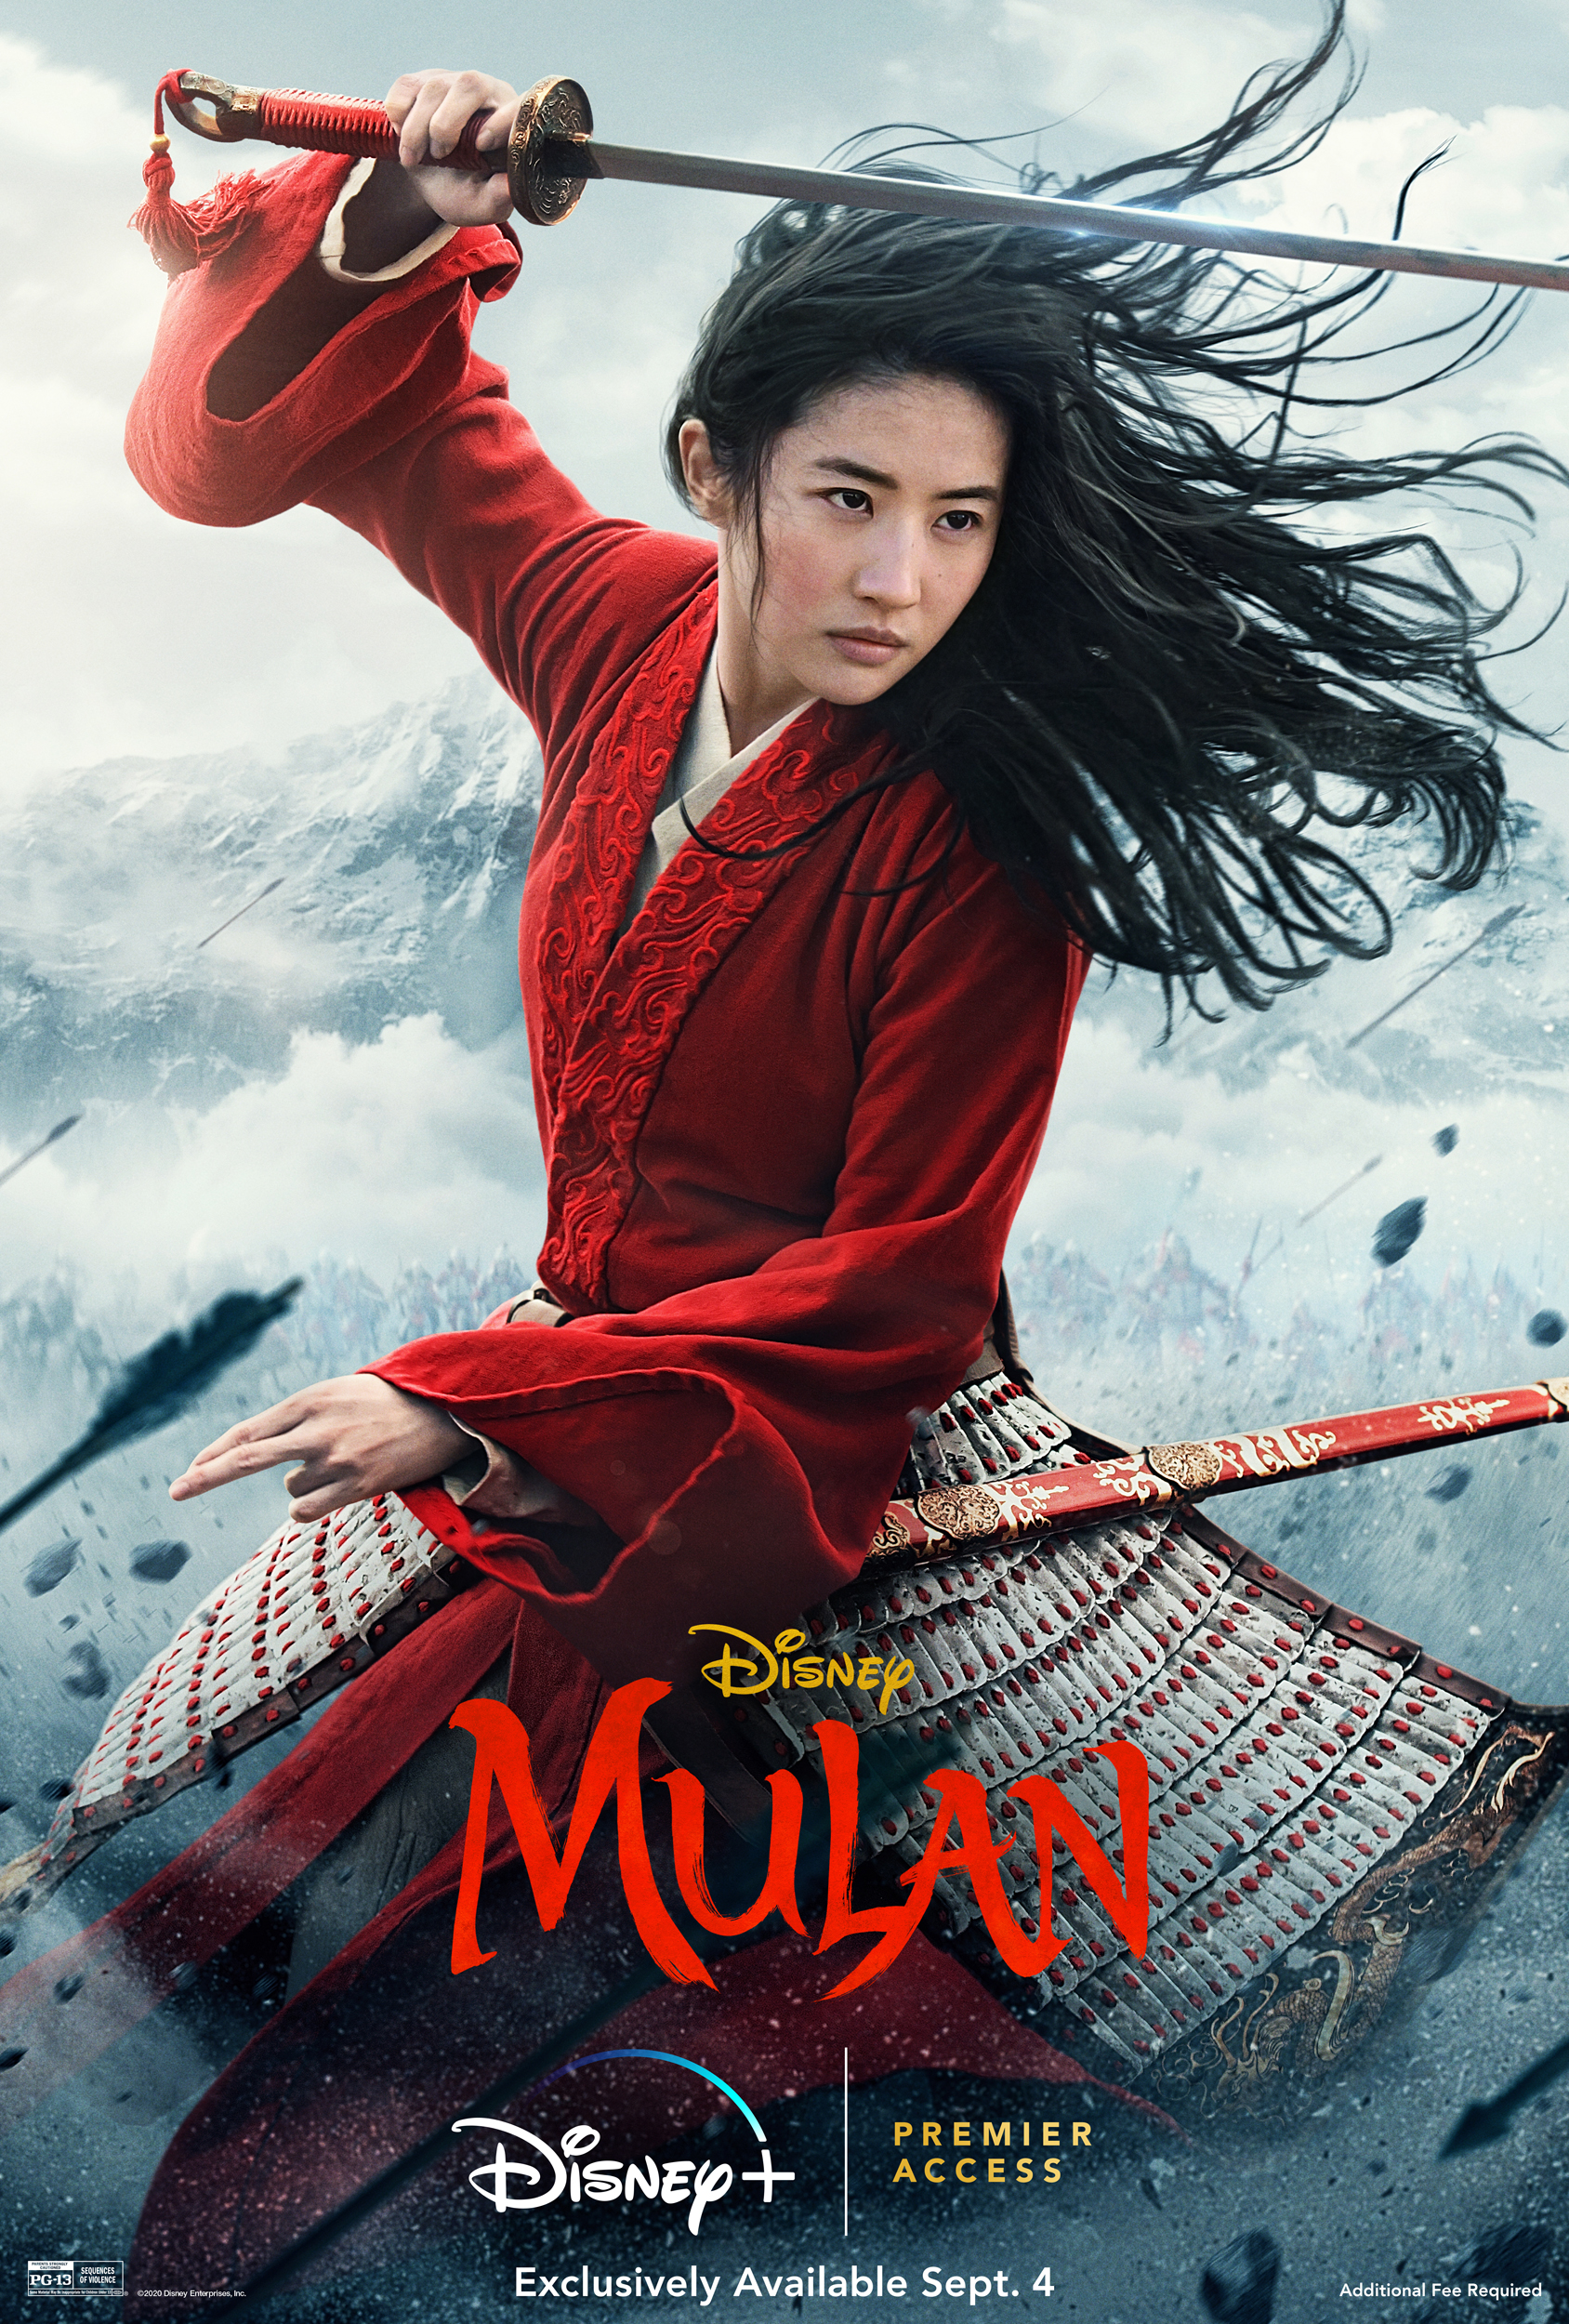 Năm ngoái, Lưu Diệc Phi đảm nhận vai Hoa Mộc Lan trong bộ phim 'Mulan' của Disney. Mặc dù vẫn còn gây nhiều tranh cãi về diễn xuất, xong bộ phim vẫn mang về nhiều giải thưởng lớn.